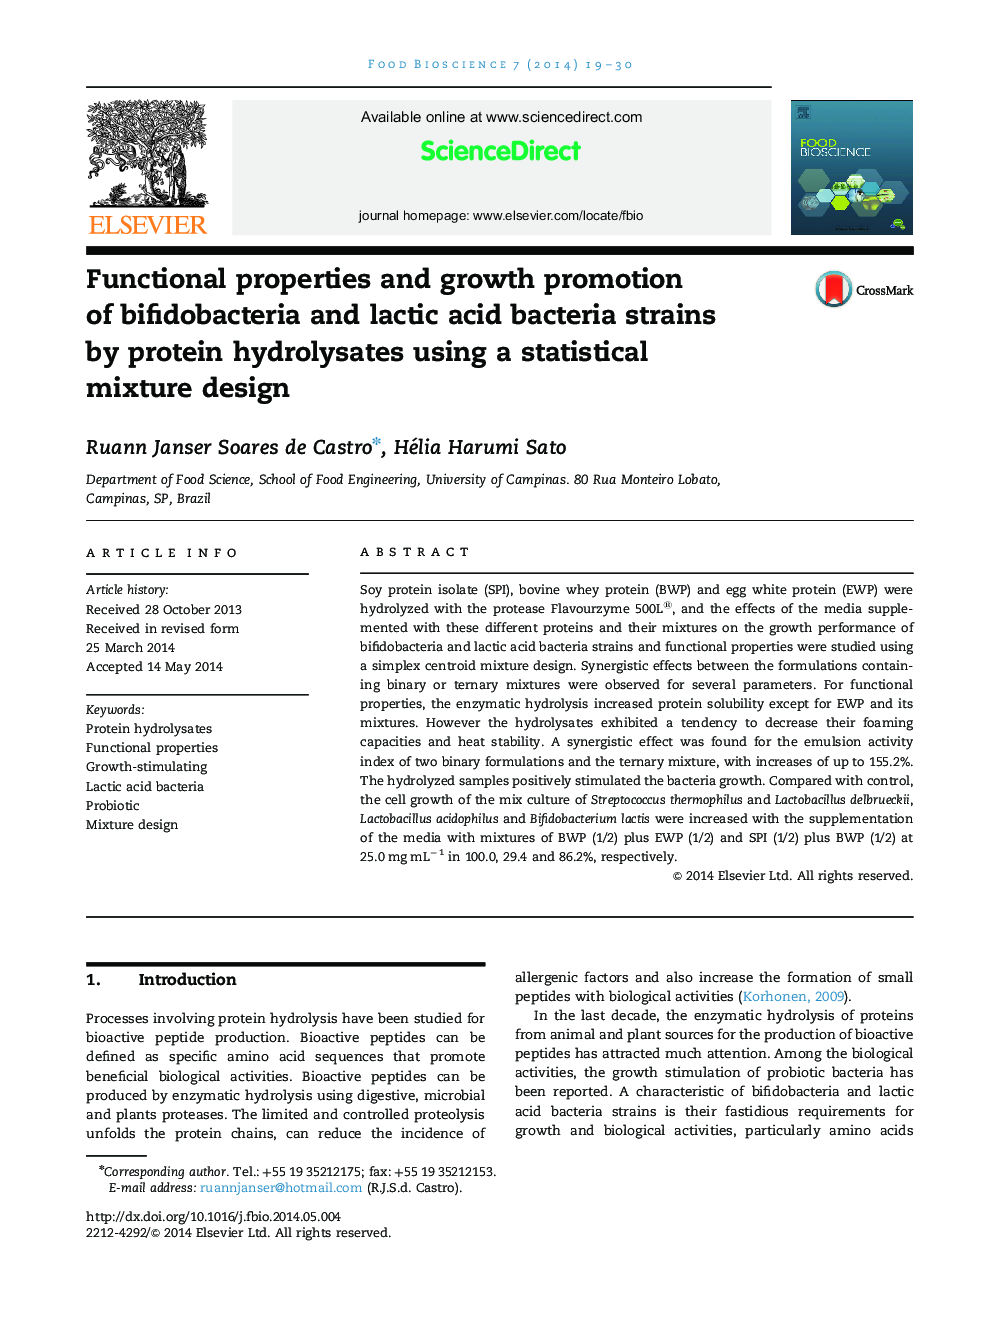 خواص عملکردی و رشد باکتری های بیفیدوباکتریوم و باکتری های اسید لاکتیک با استفاده از یک ترکیب آماری با استفاده از هیدرولیز پروتئین 